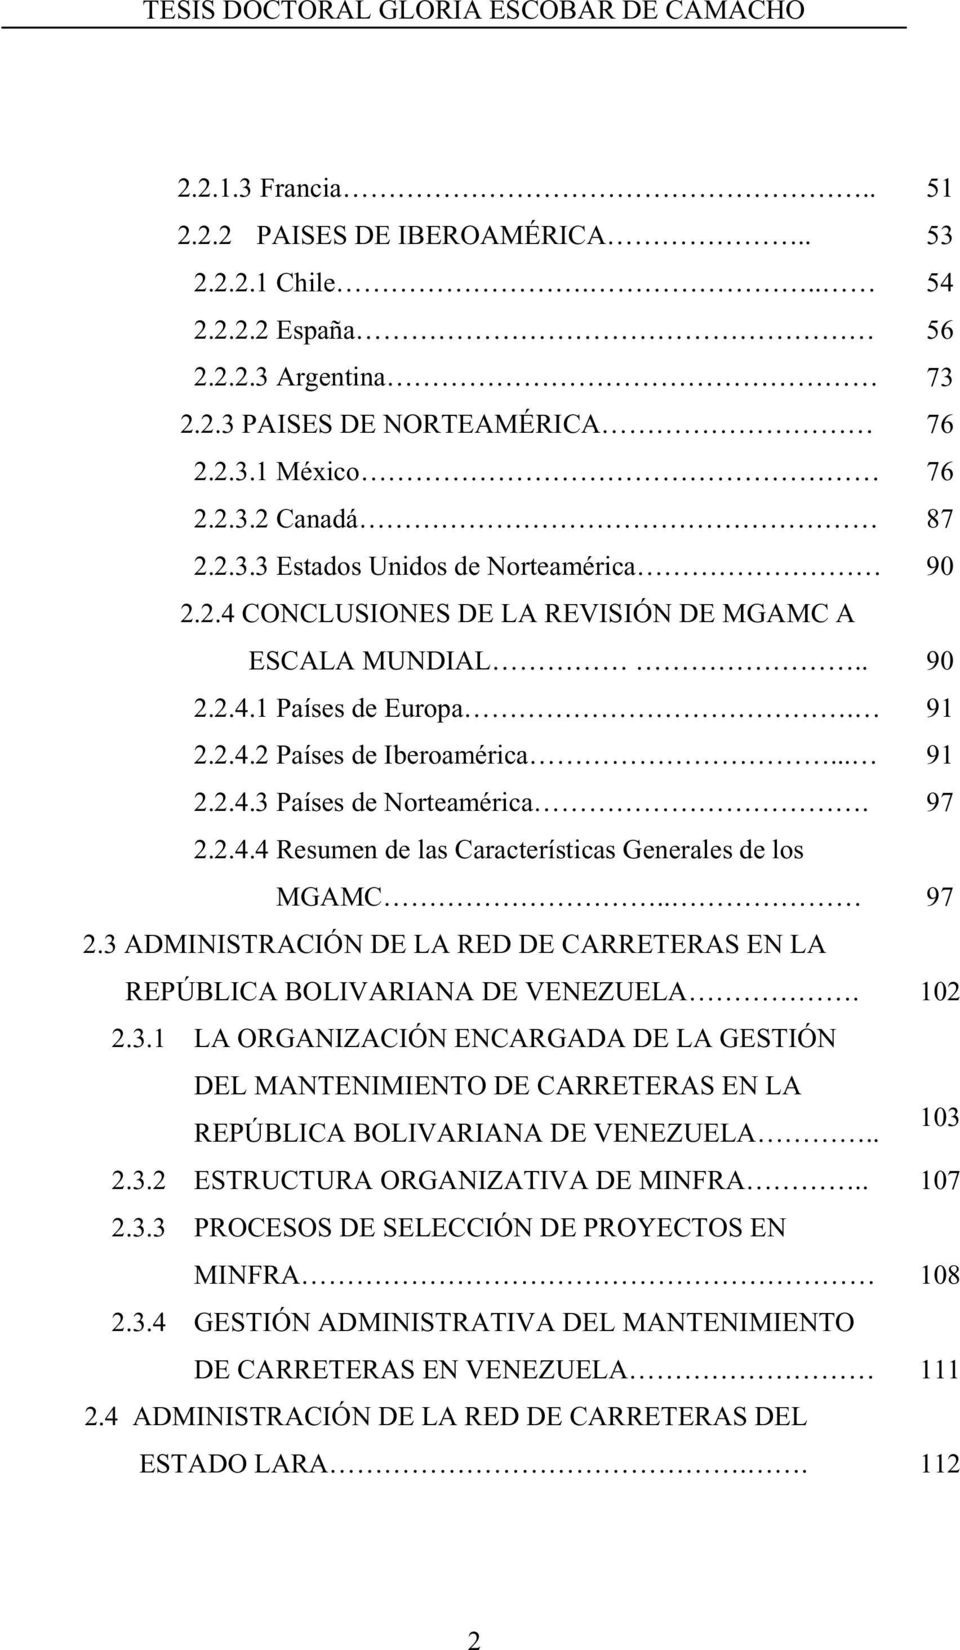 . 2.3 ADMINISTRACIÓN DE LA RED DE CARRETERAS EN LA REPÚBLICA BOLIVARIANA DE VENEZUELA. 2.3.1 LA ORGANIZACIÓN ENCARGADA DE LA GESTIÓN DEL MANTENIMIENTO DE CARRETERAS EN LA REPÚBLICA BOLIVARIANA DE VENEZUELA.